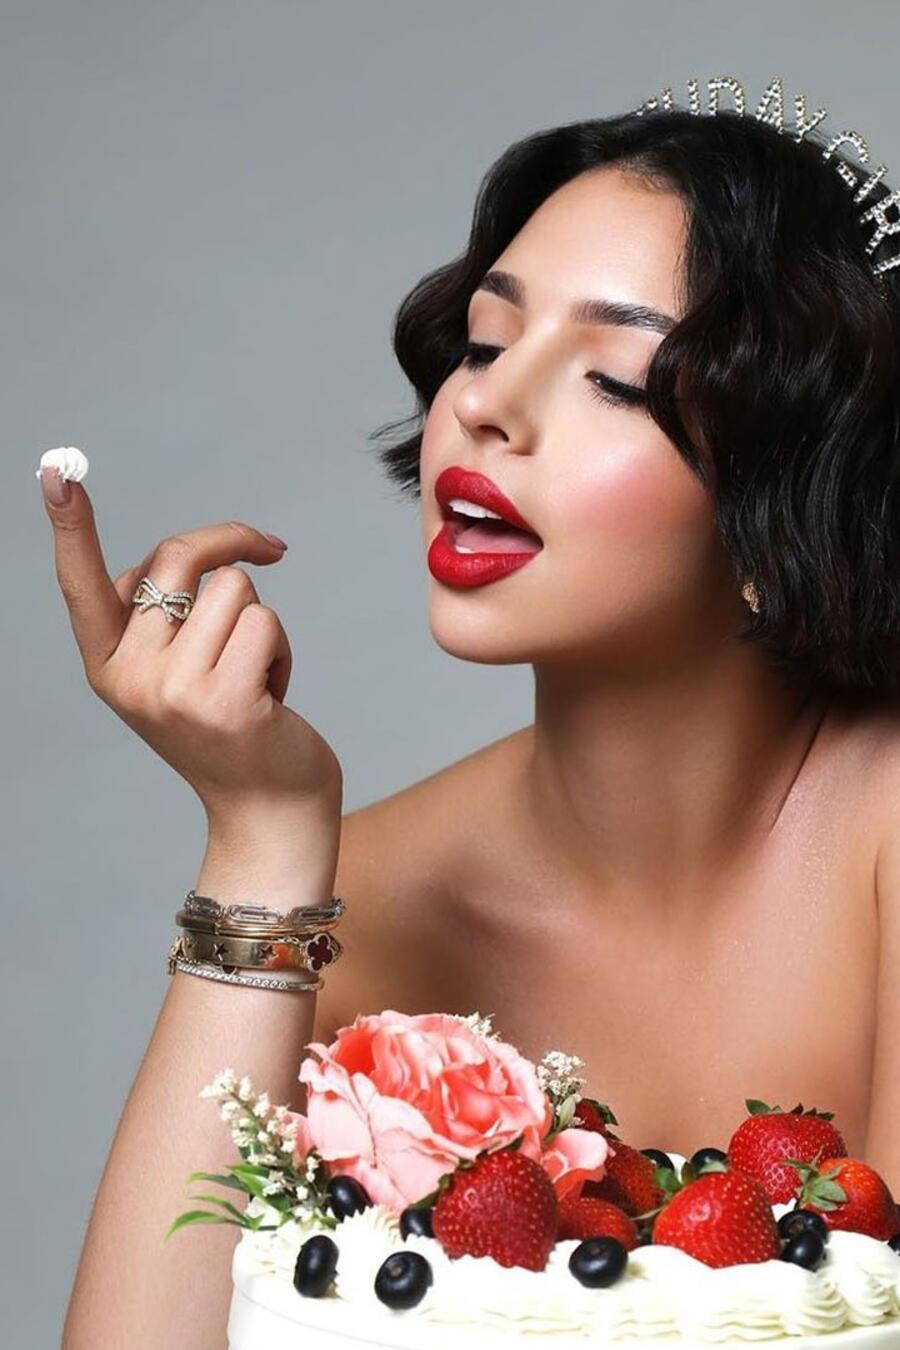 Ángela Aguilar celebró su cumpleaños 20 con fotos seductoras chupándose el dedo.